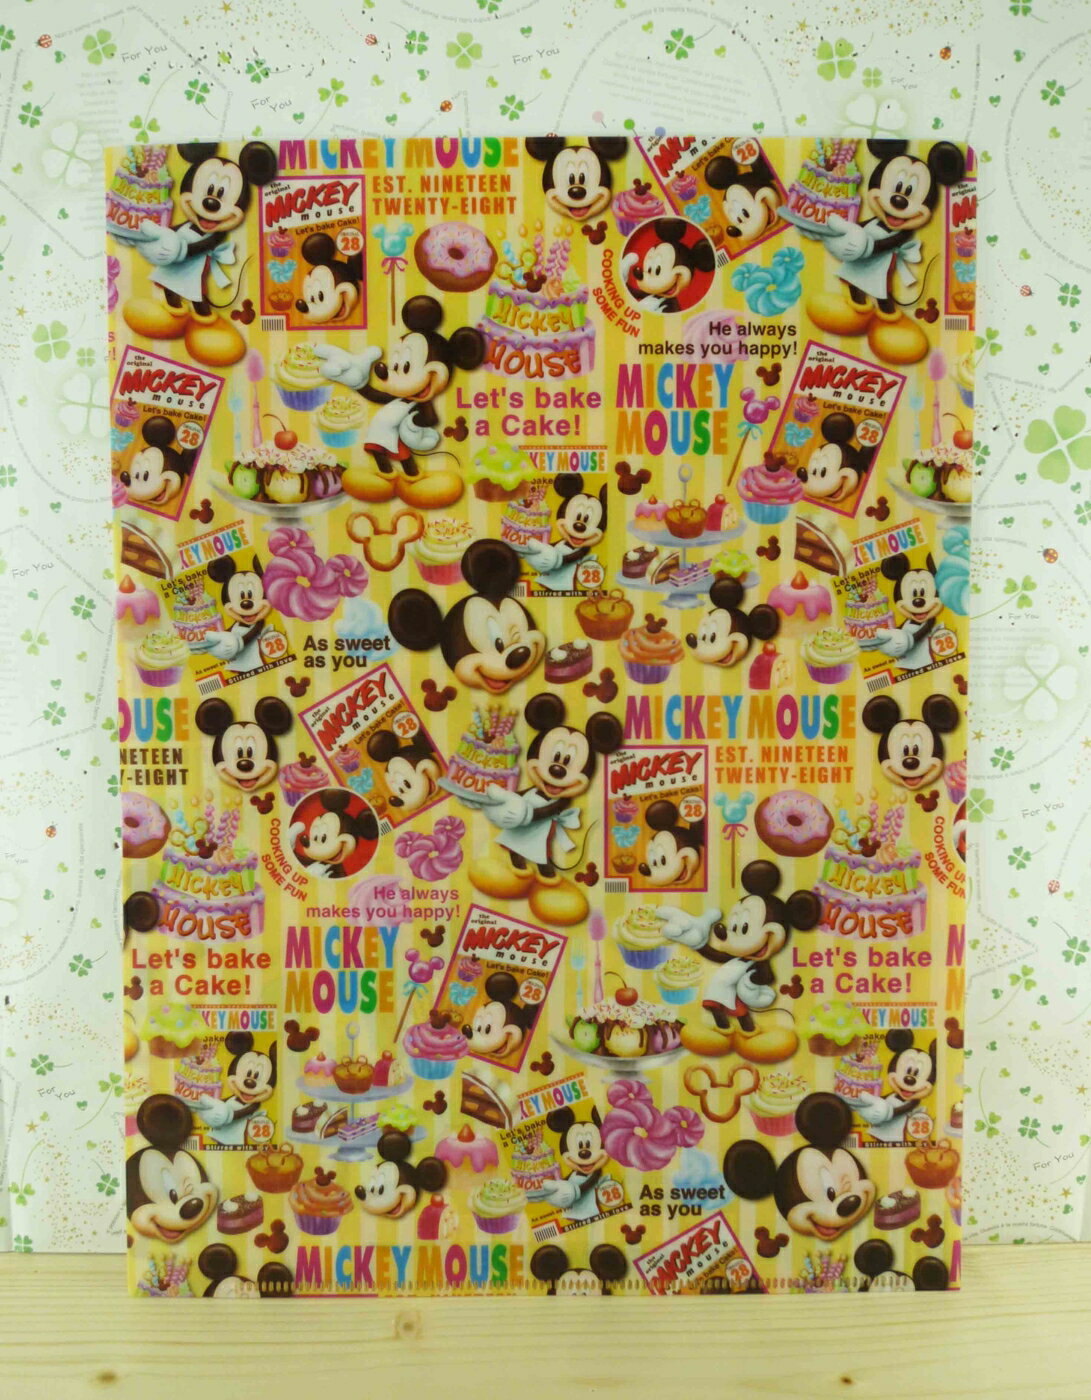 【震撼精品百貨】Micky Mouse 米奇/米妮 分類掀開夾-米奇下午茶時光-黃色底 震撼日式精品百貨